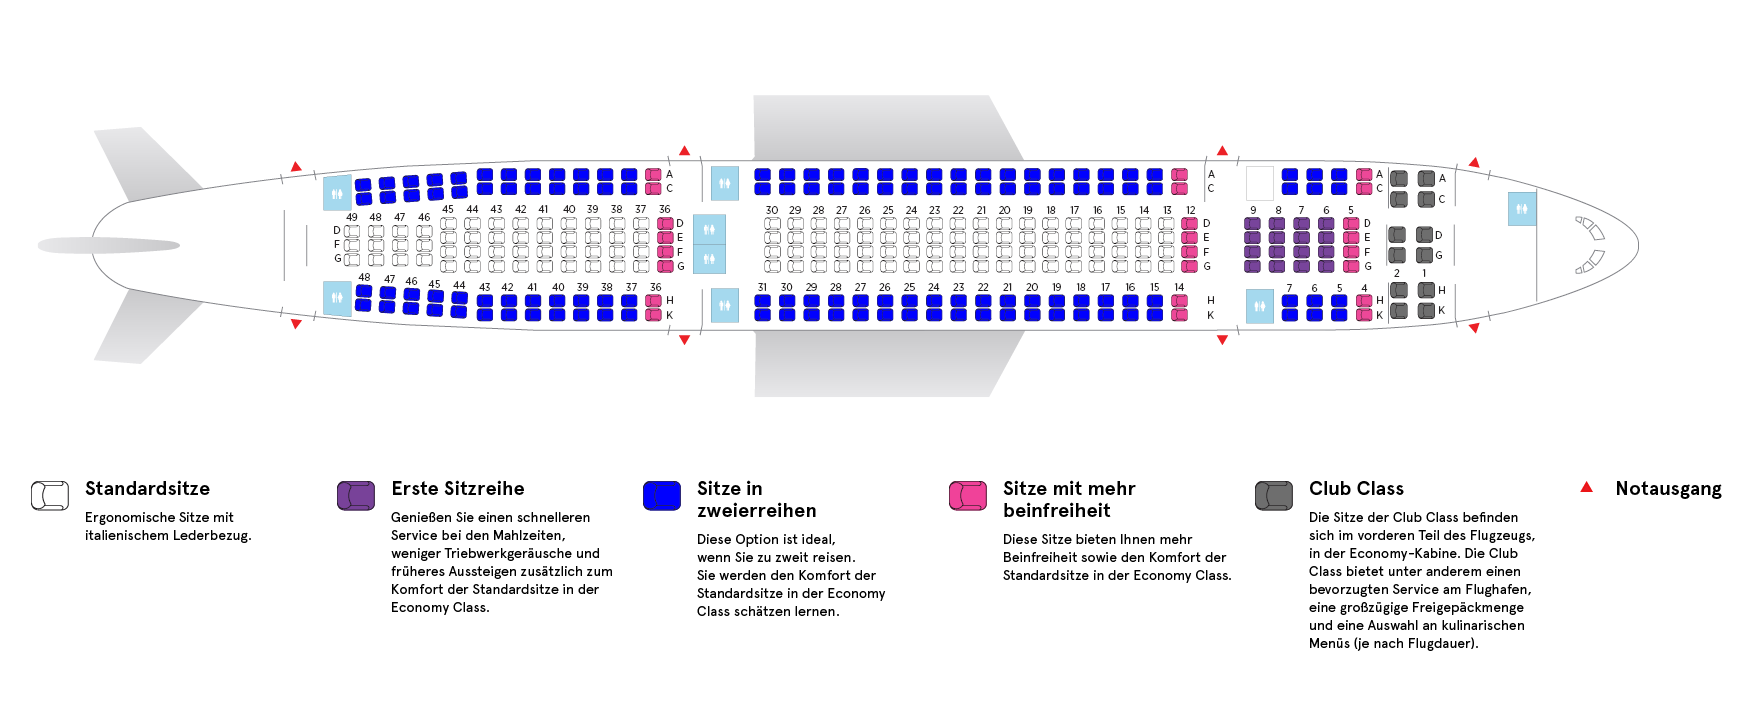 Flugzeugkabine eines Air Transat Airbus A330-200 Low Density